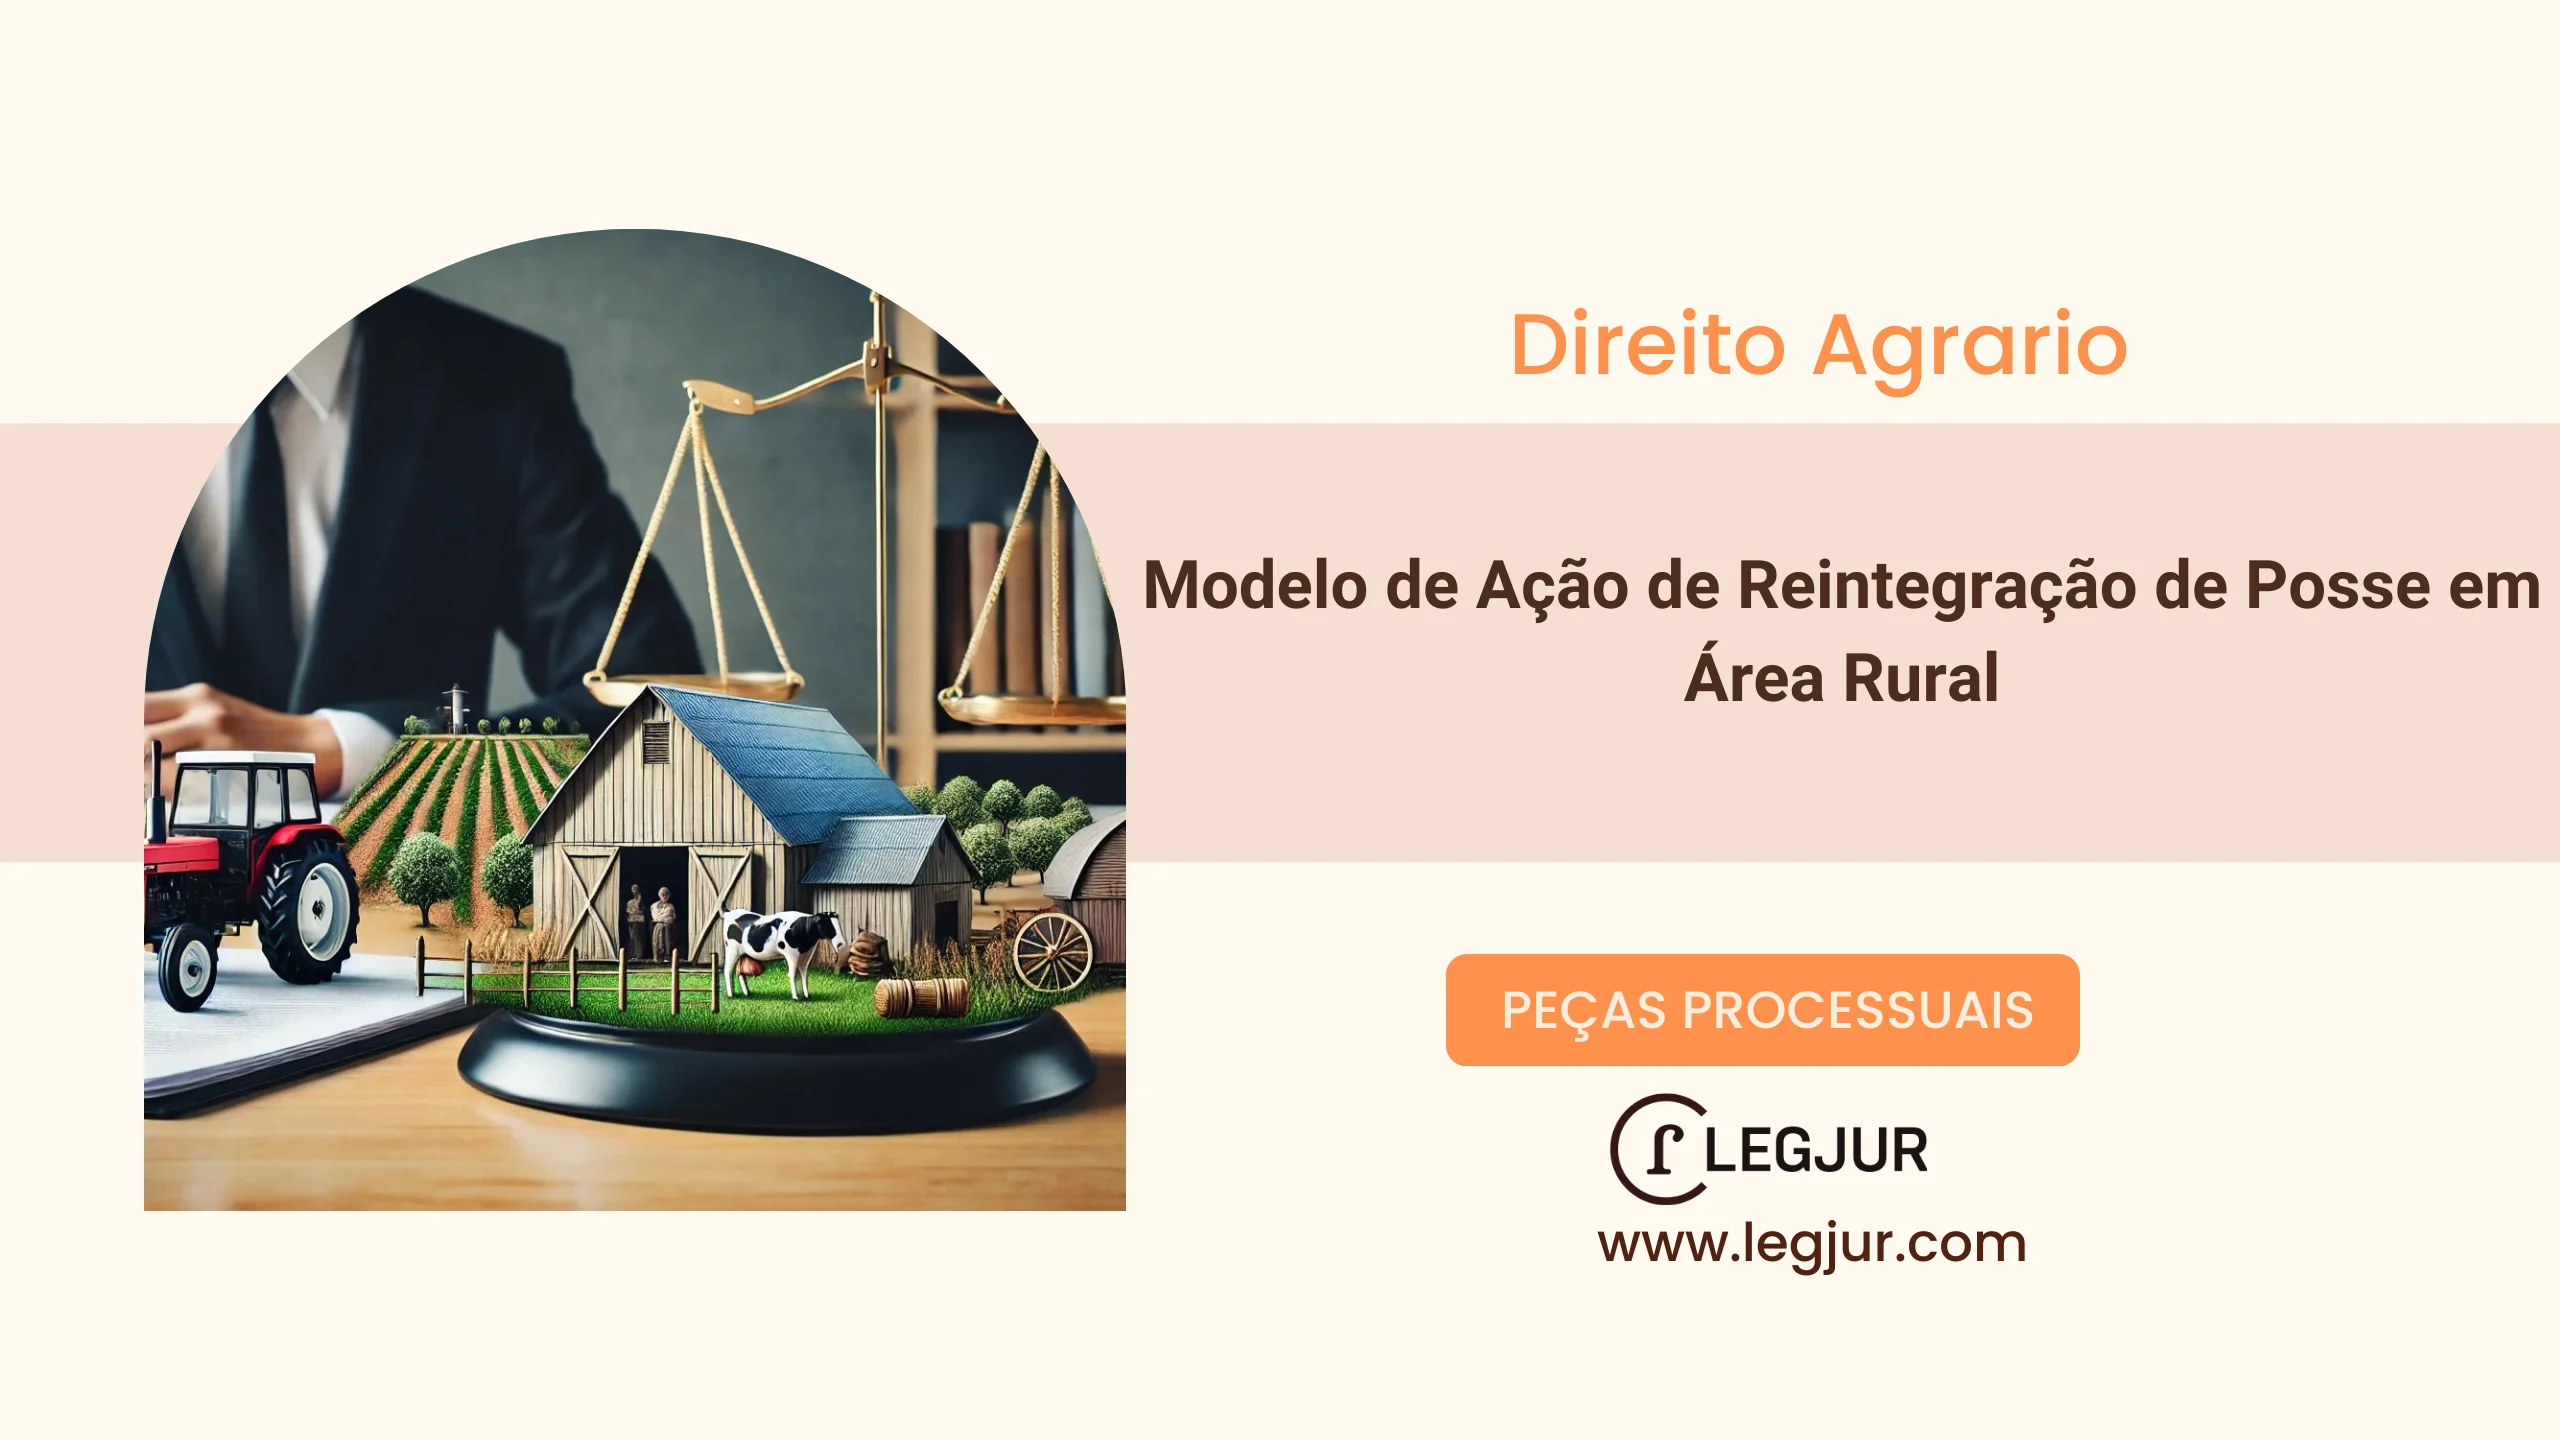 Modelo de Ação de Reintegração de Posse em Área Rural